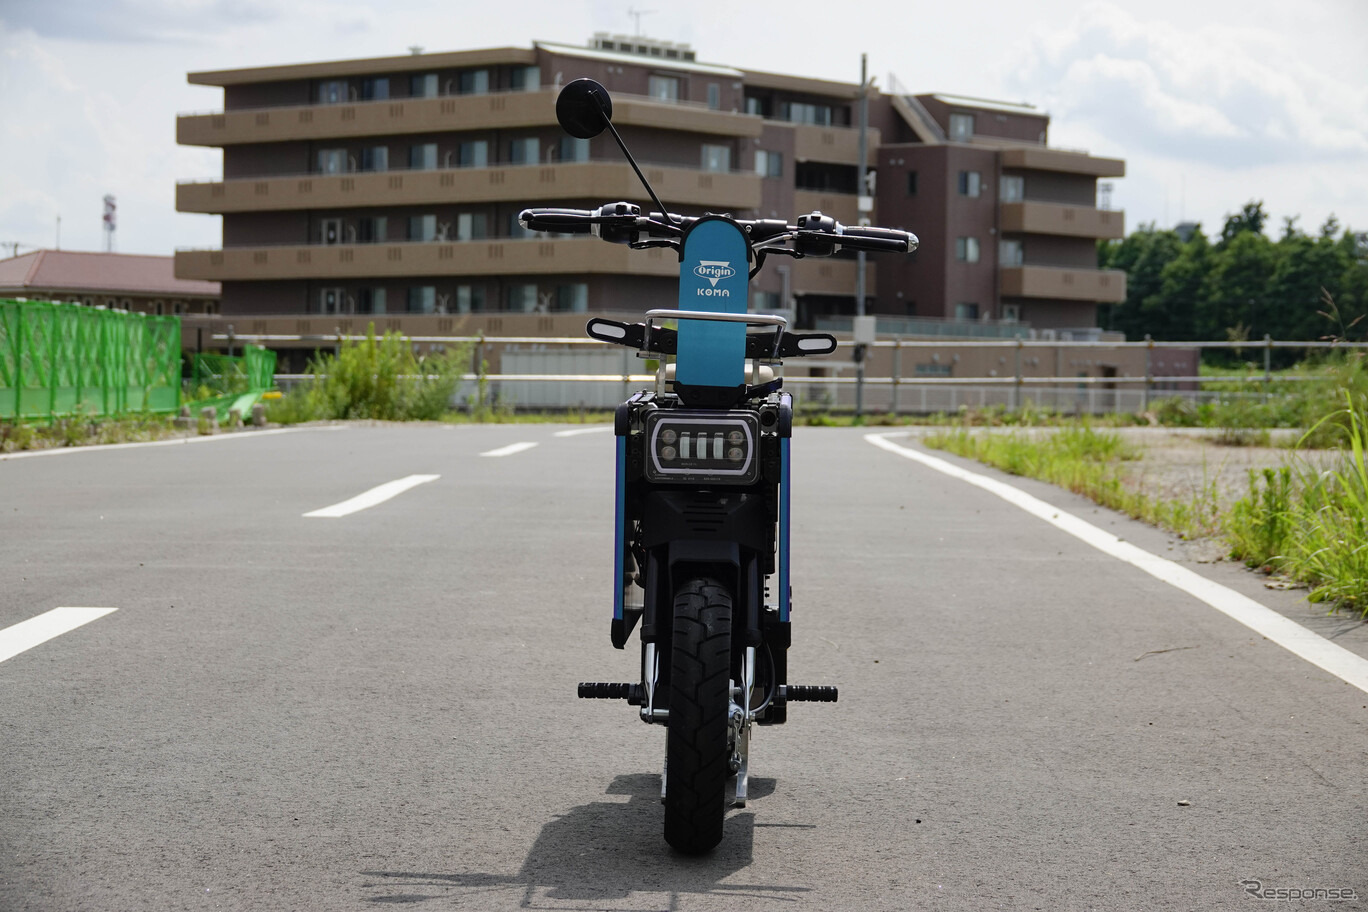 ICOMAの折りたたみ電動バイク「タタメルバイク」